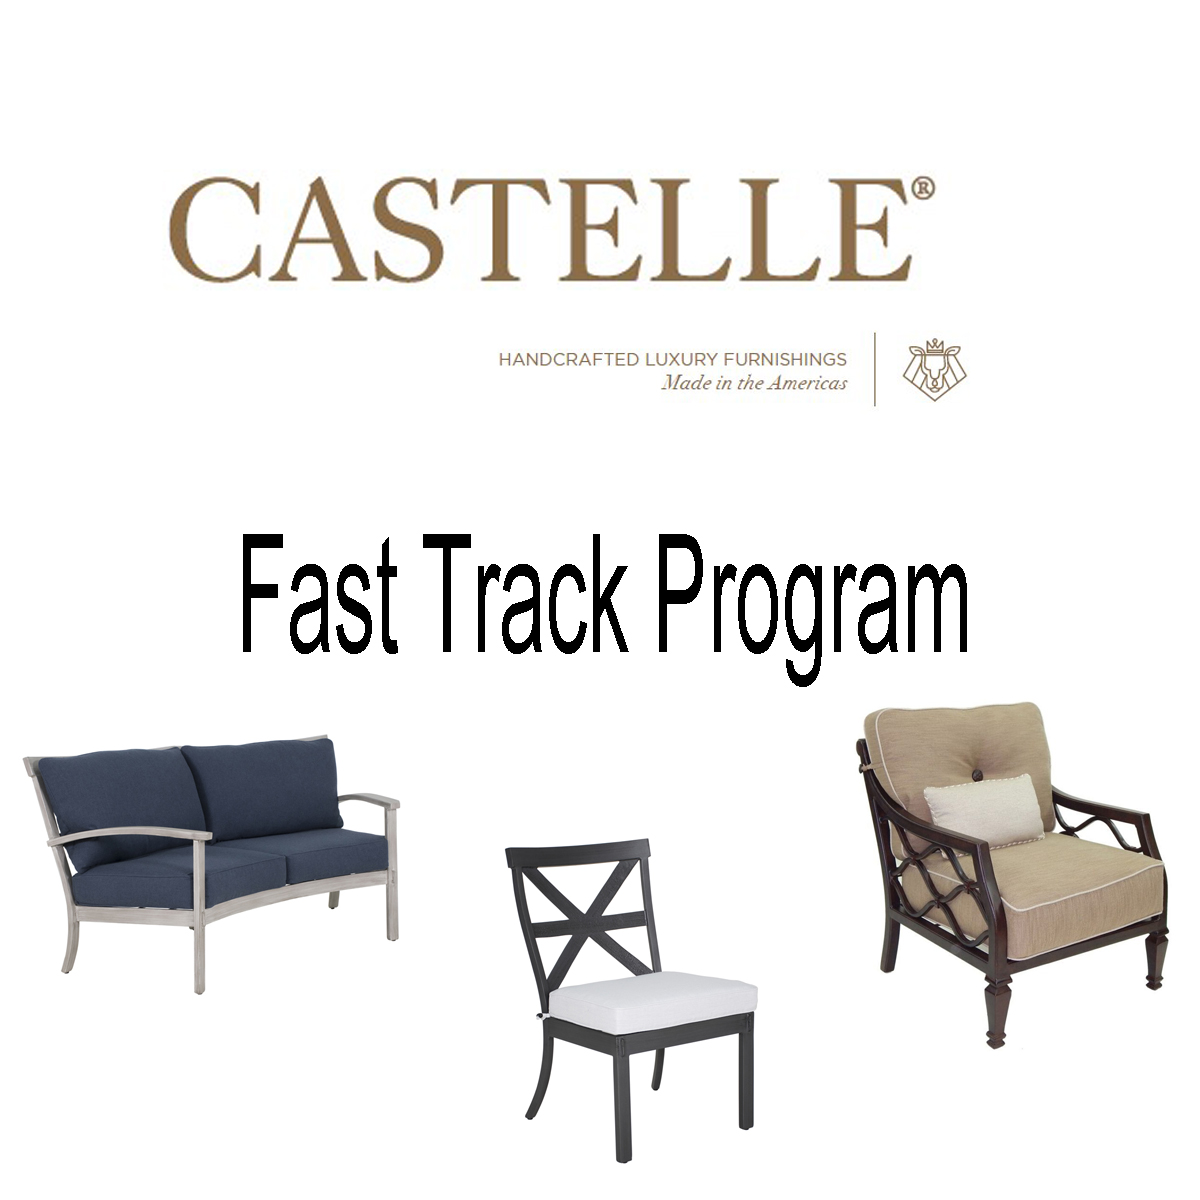 Castelle Fast Track Program